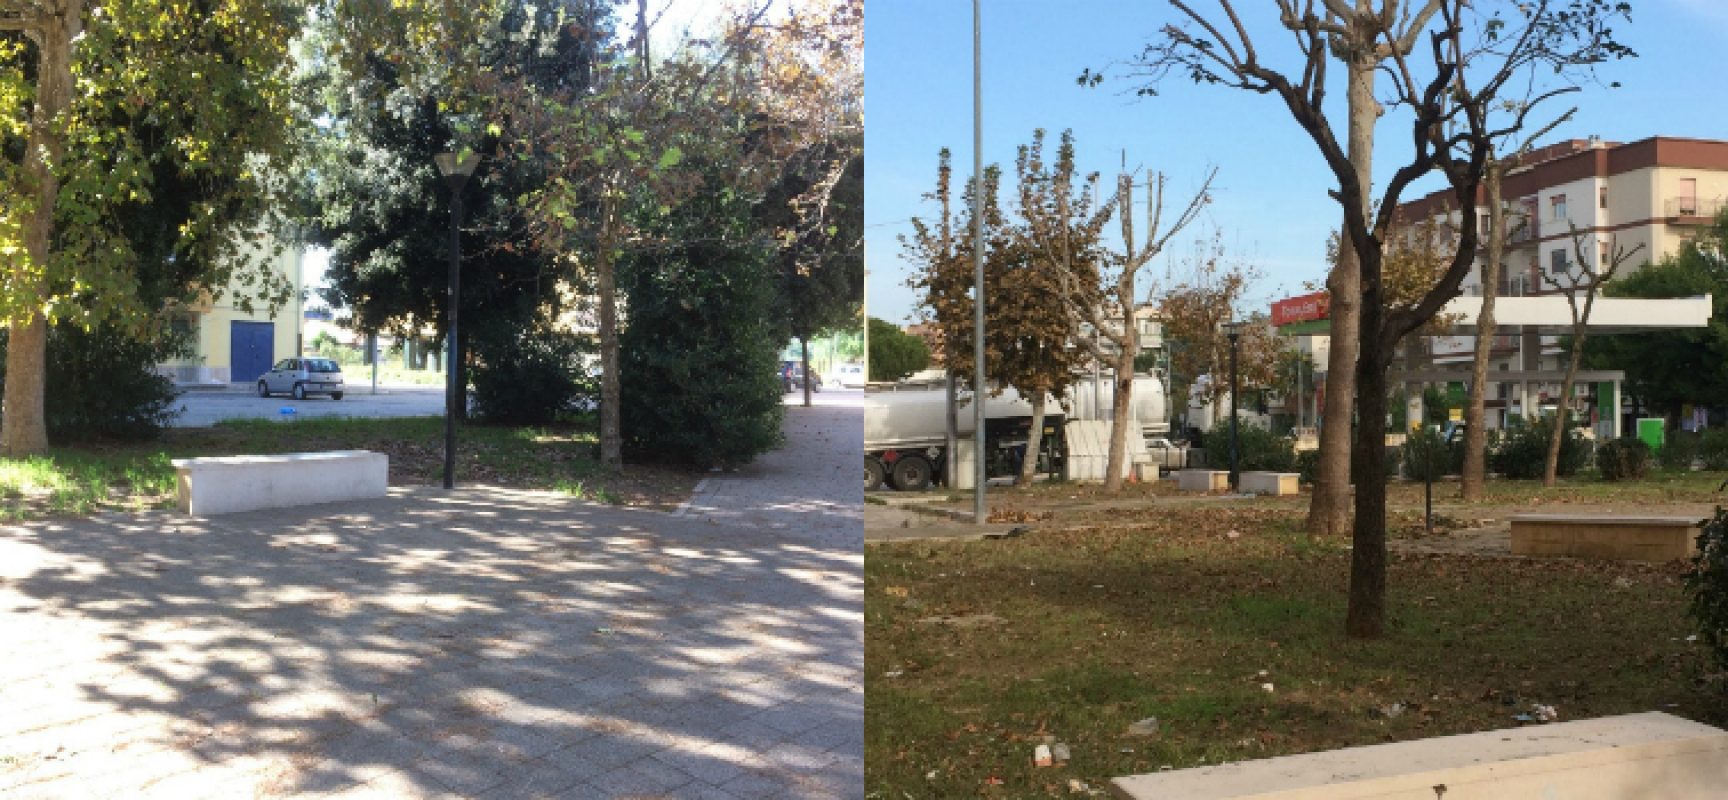 Bisceglie 5 Stelle: “Danneggiati 13 alberi di platano su 17 in piazza Salvo D’Acquisto”